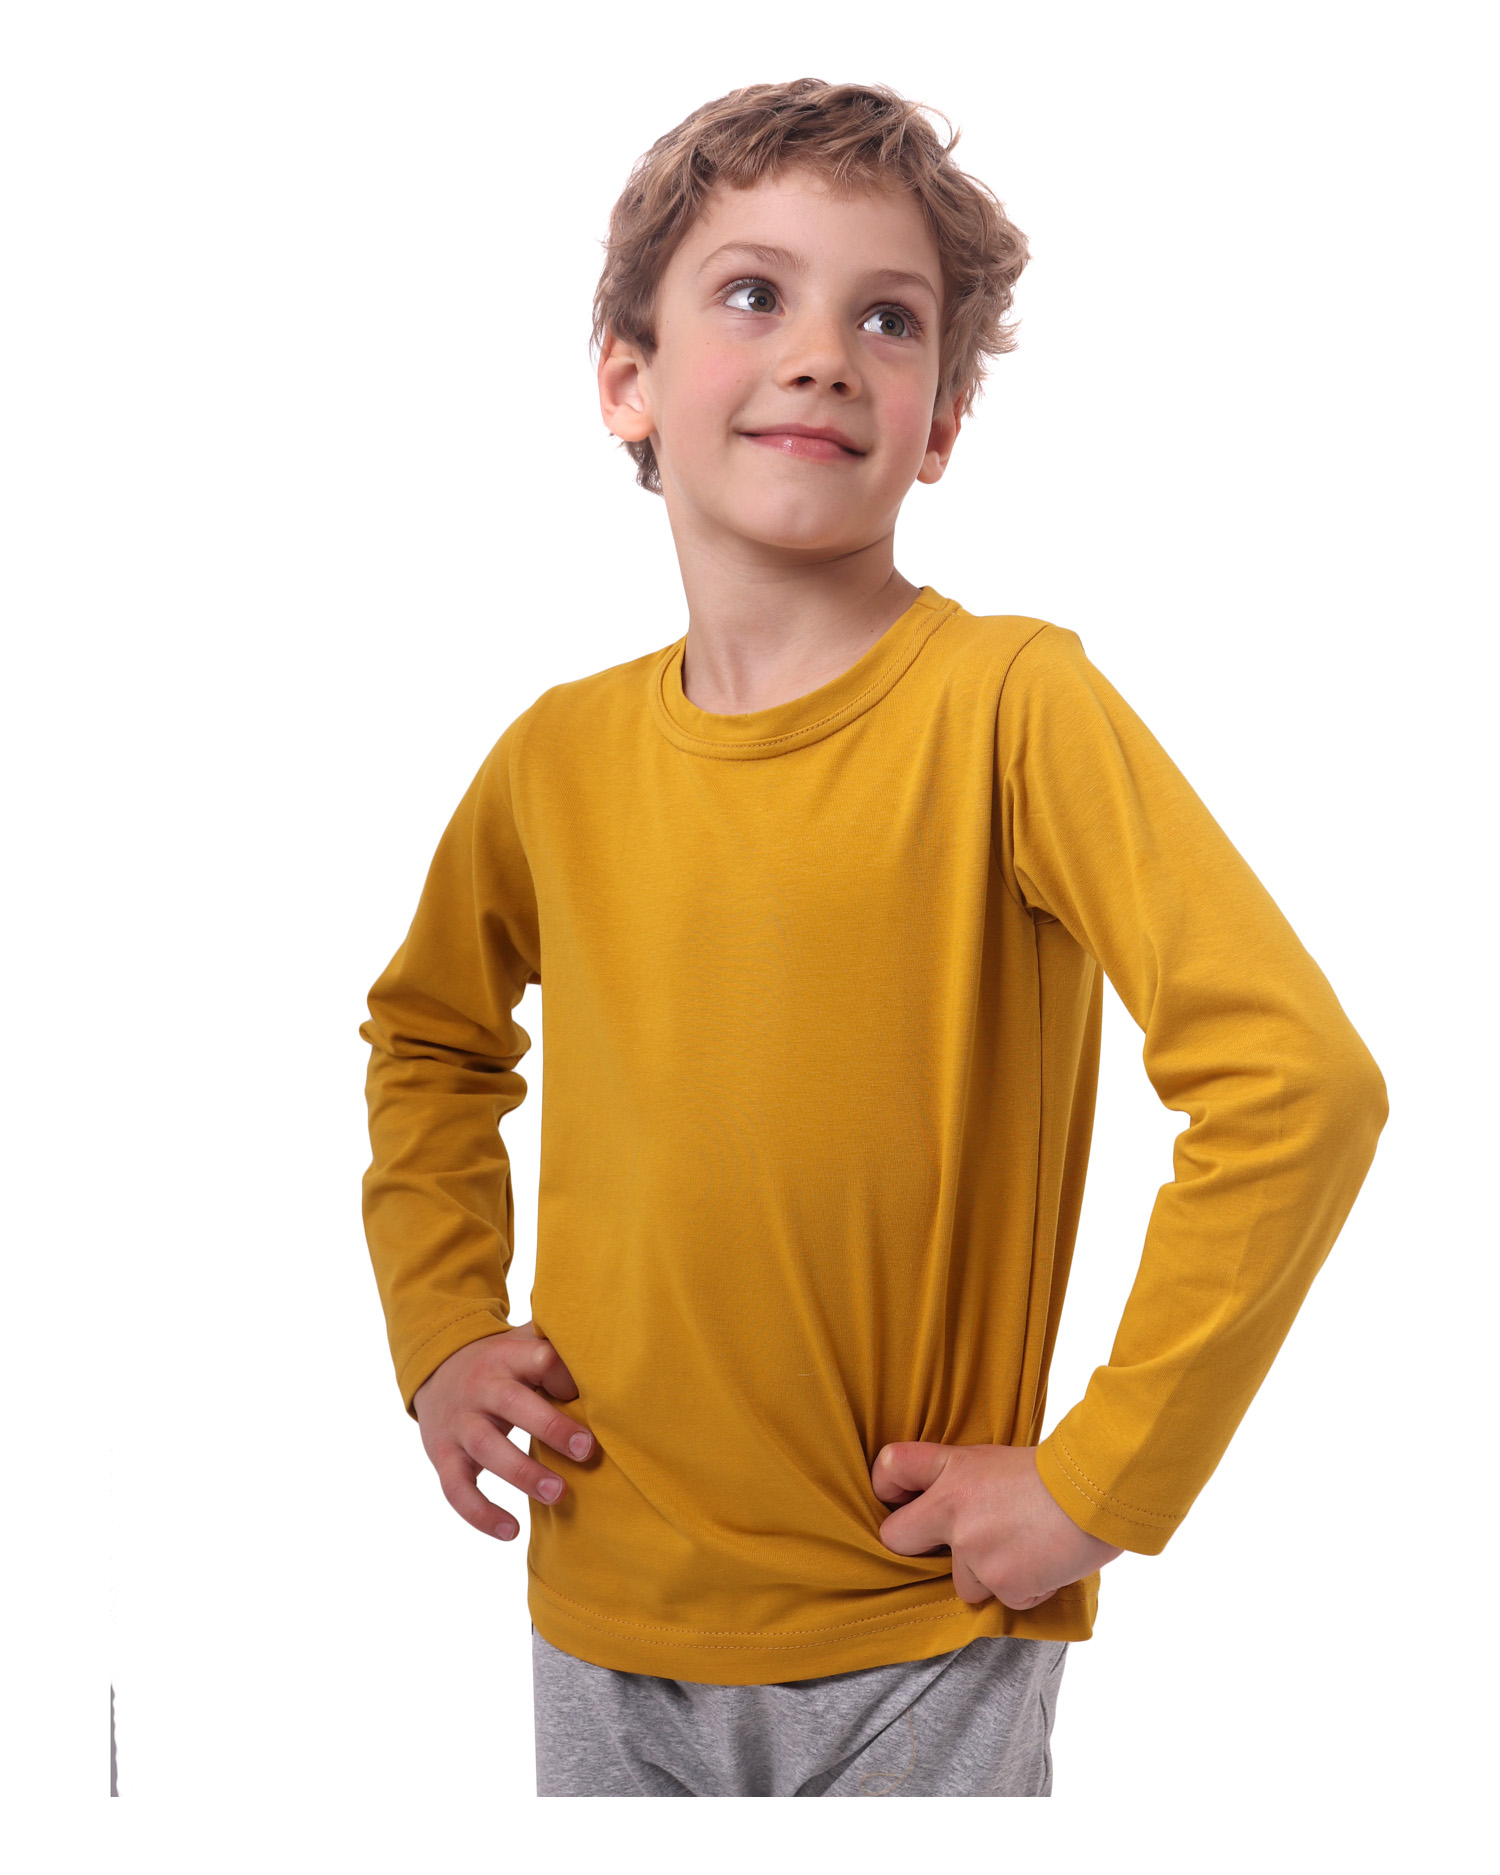 Children's T-shirt, long sleeve, mustard